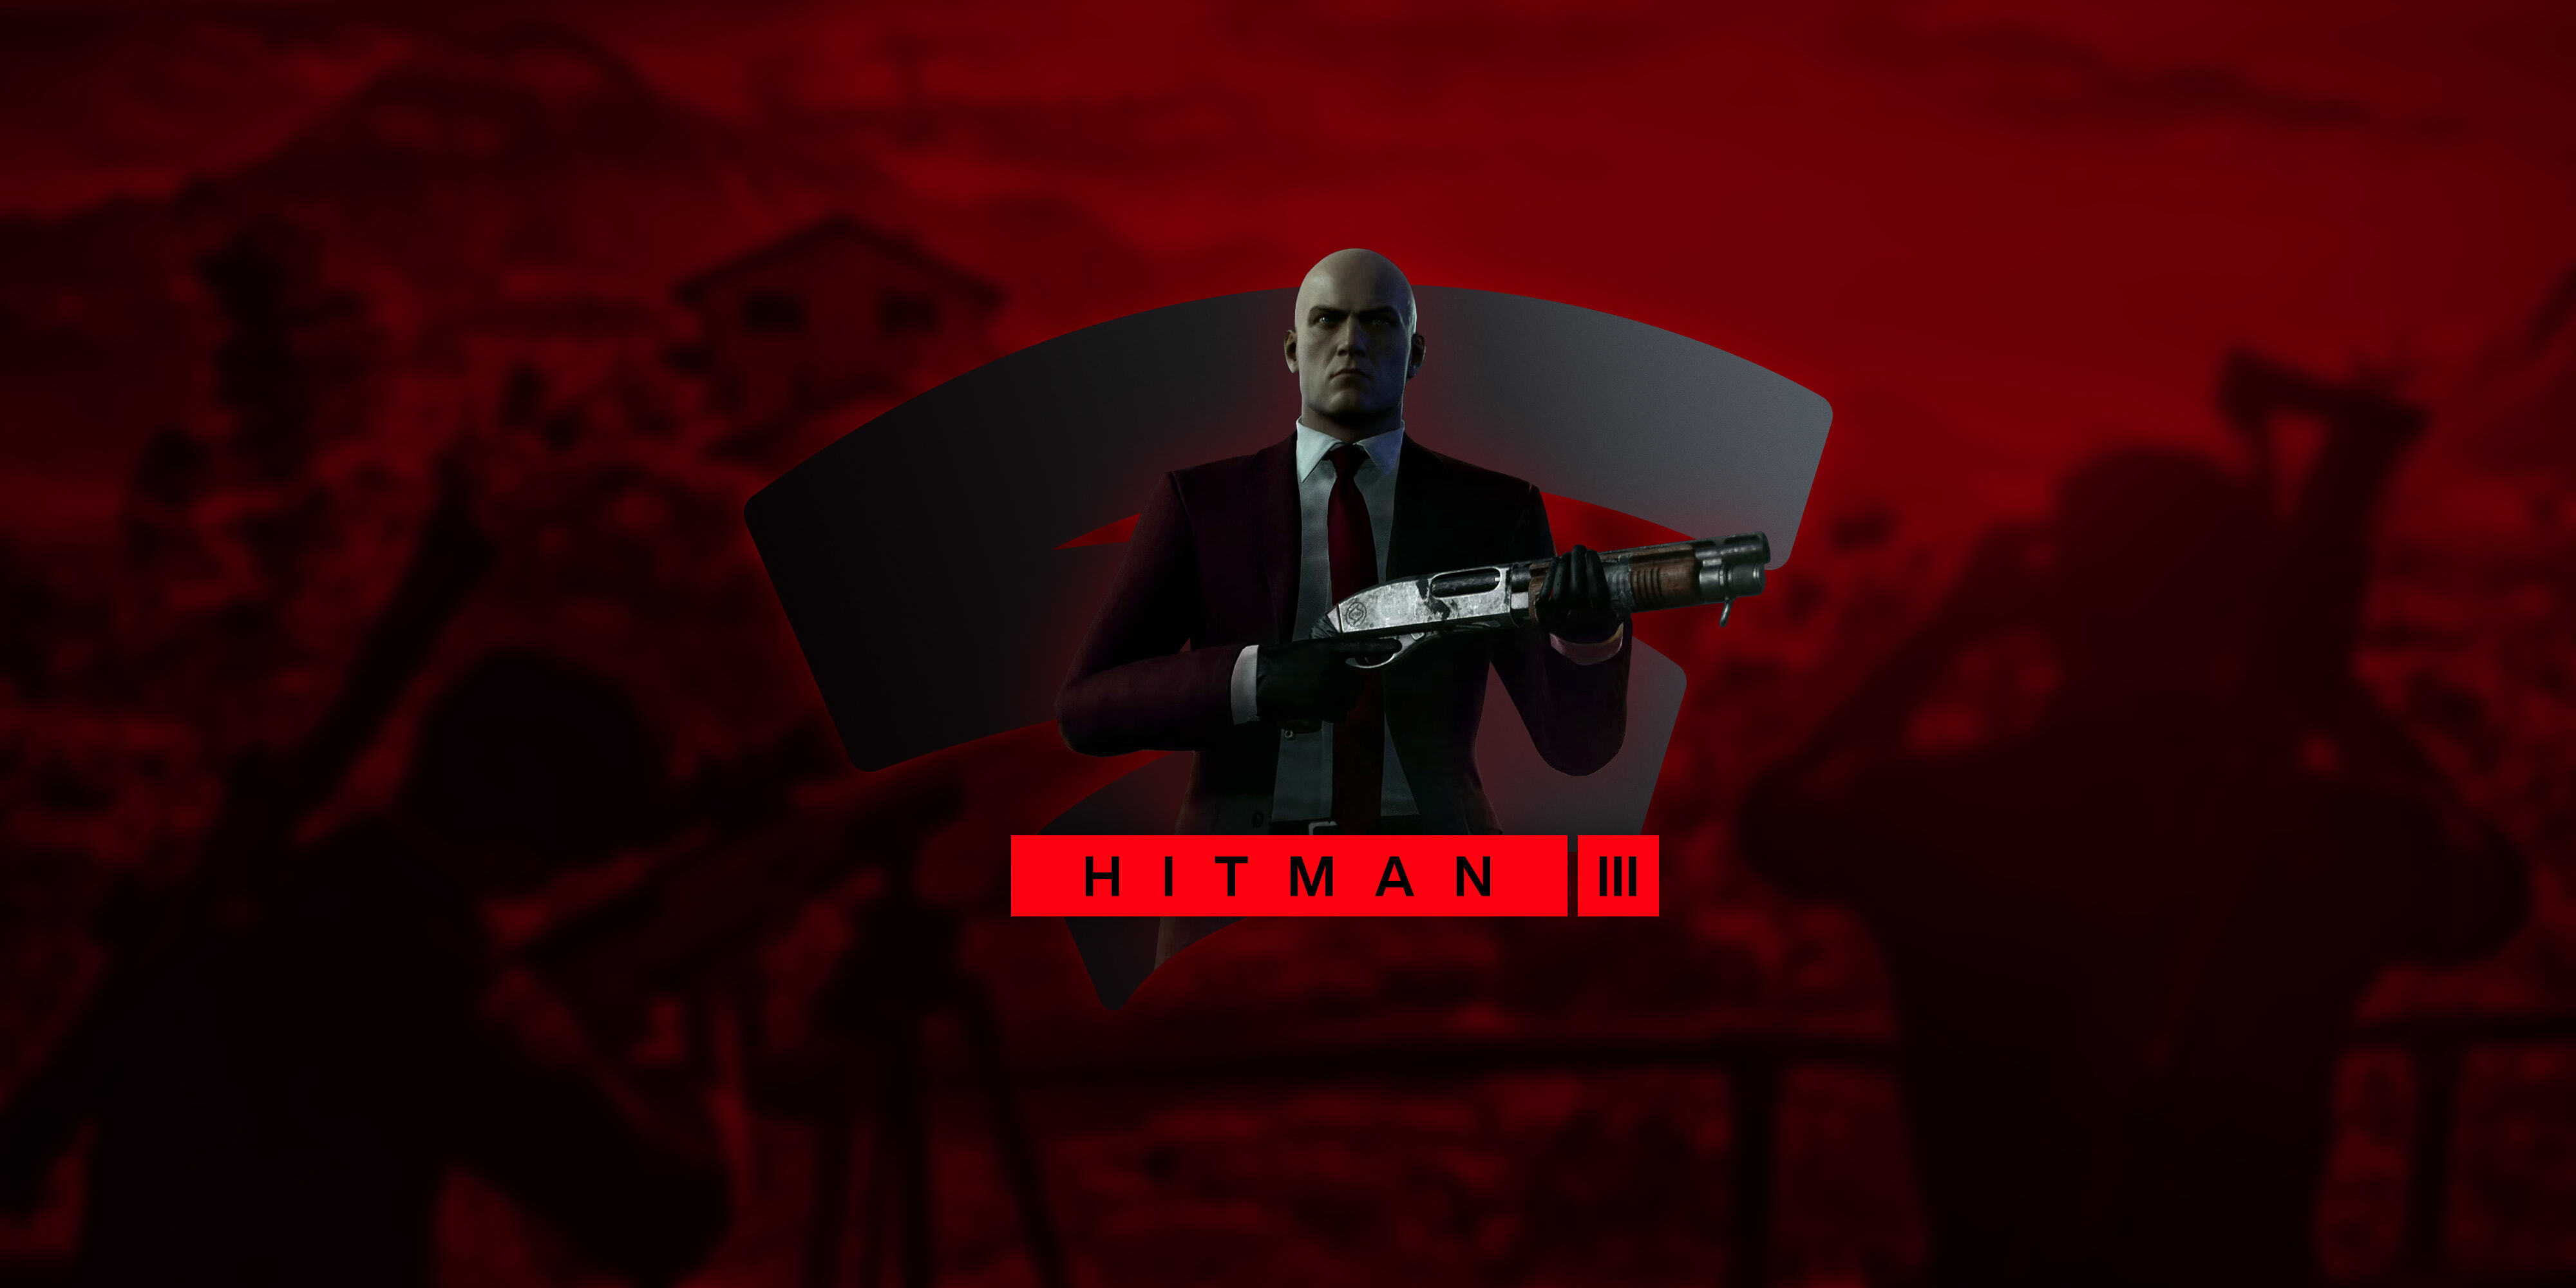 Hitman 3: How to Transfer Progress From Hitman 1 & 2